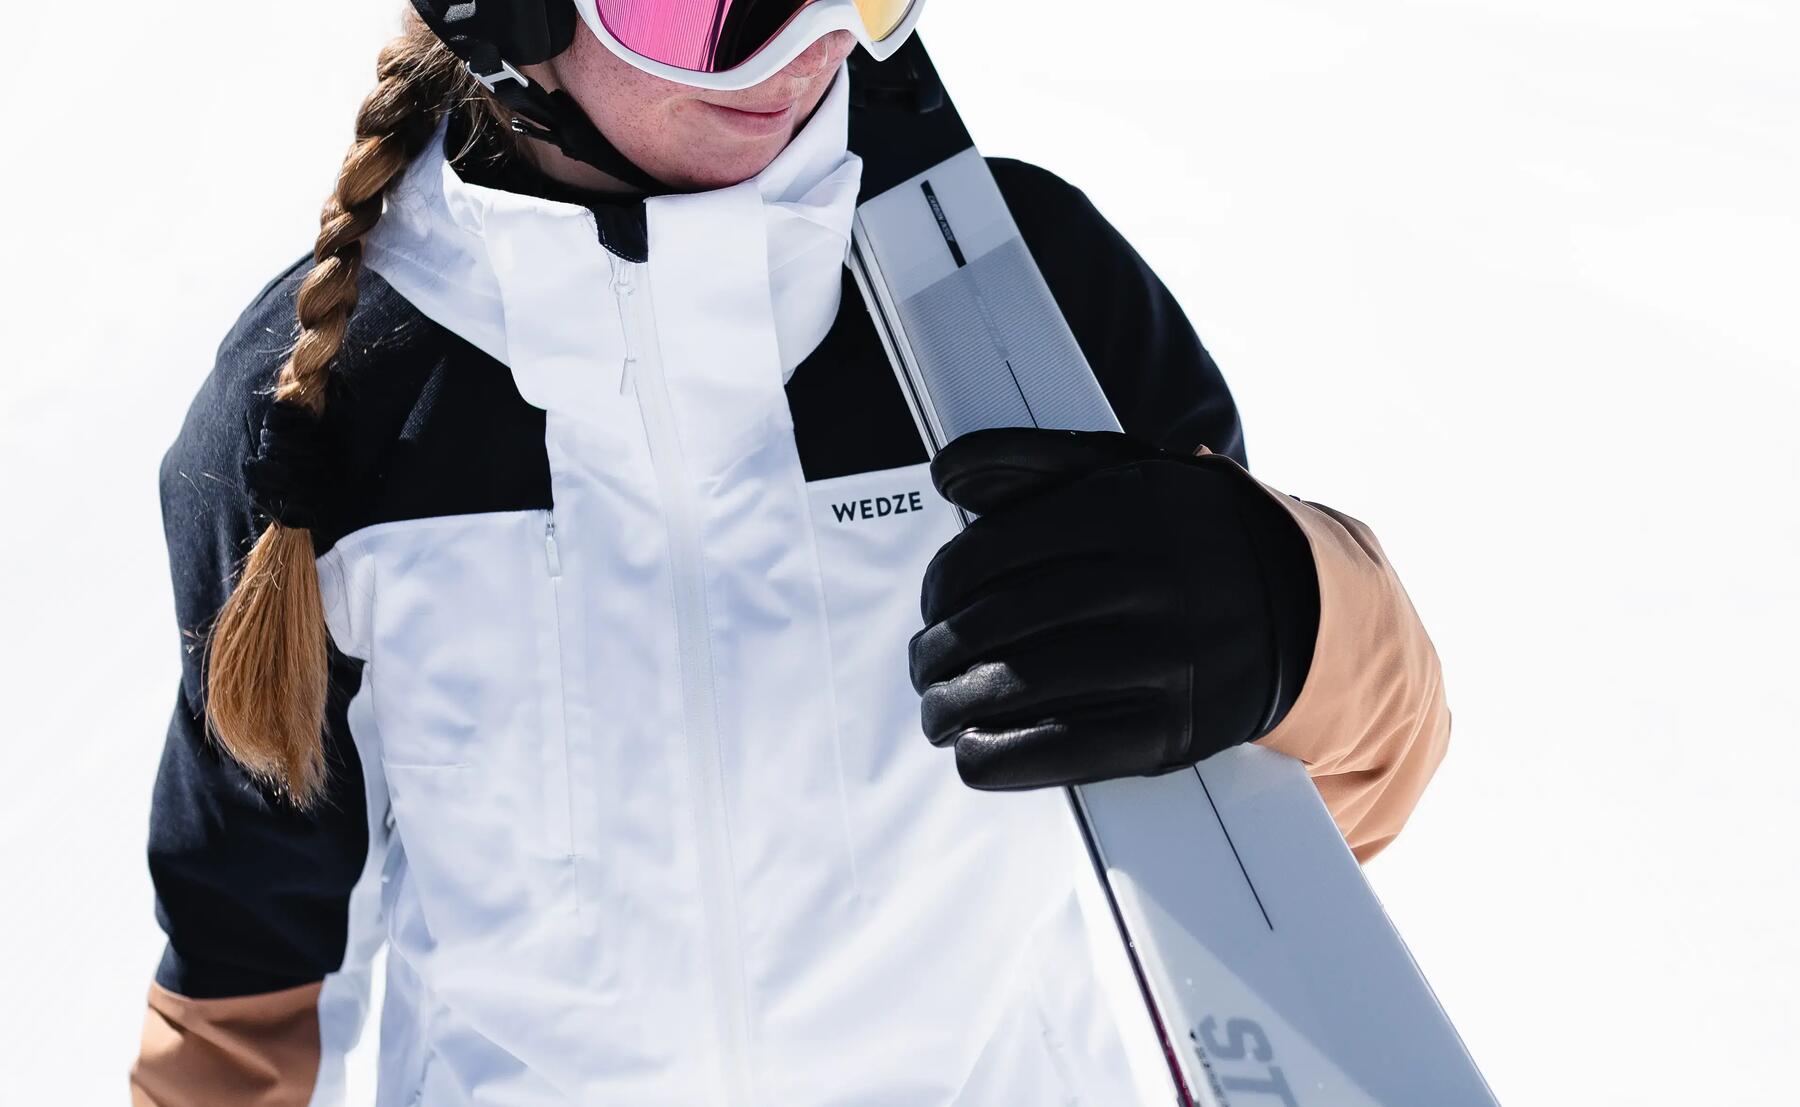 Správná údržba a oprava dětské lyžařské bundy 